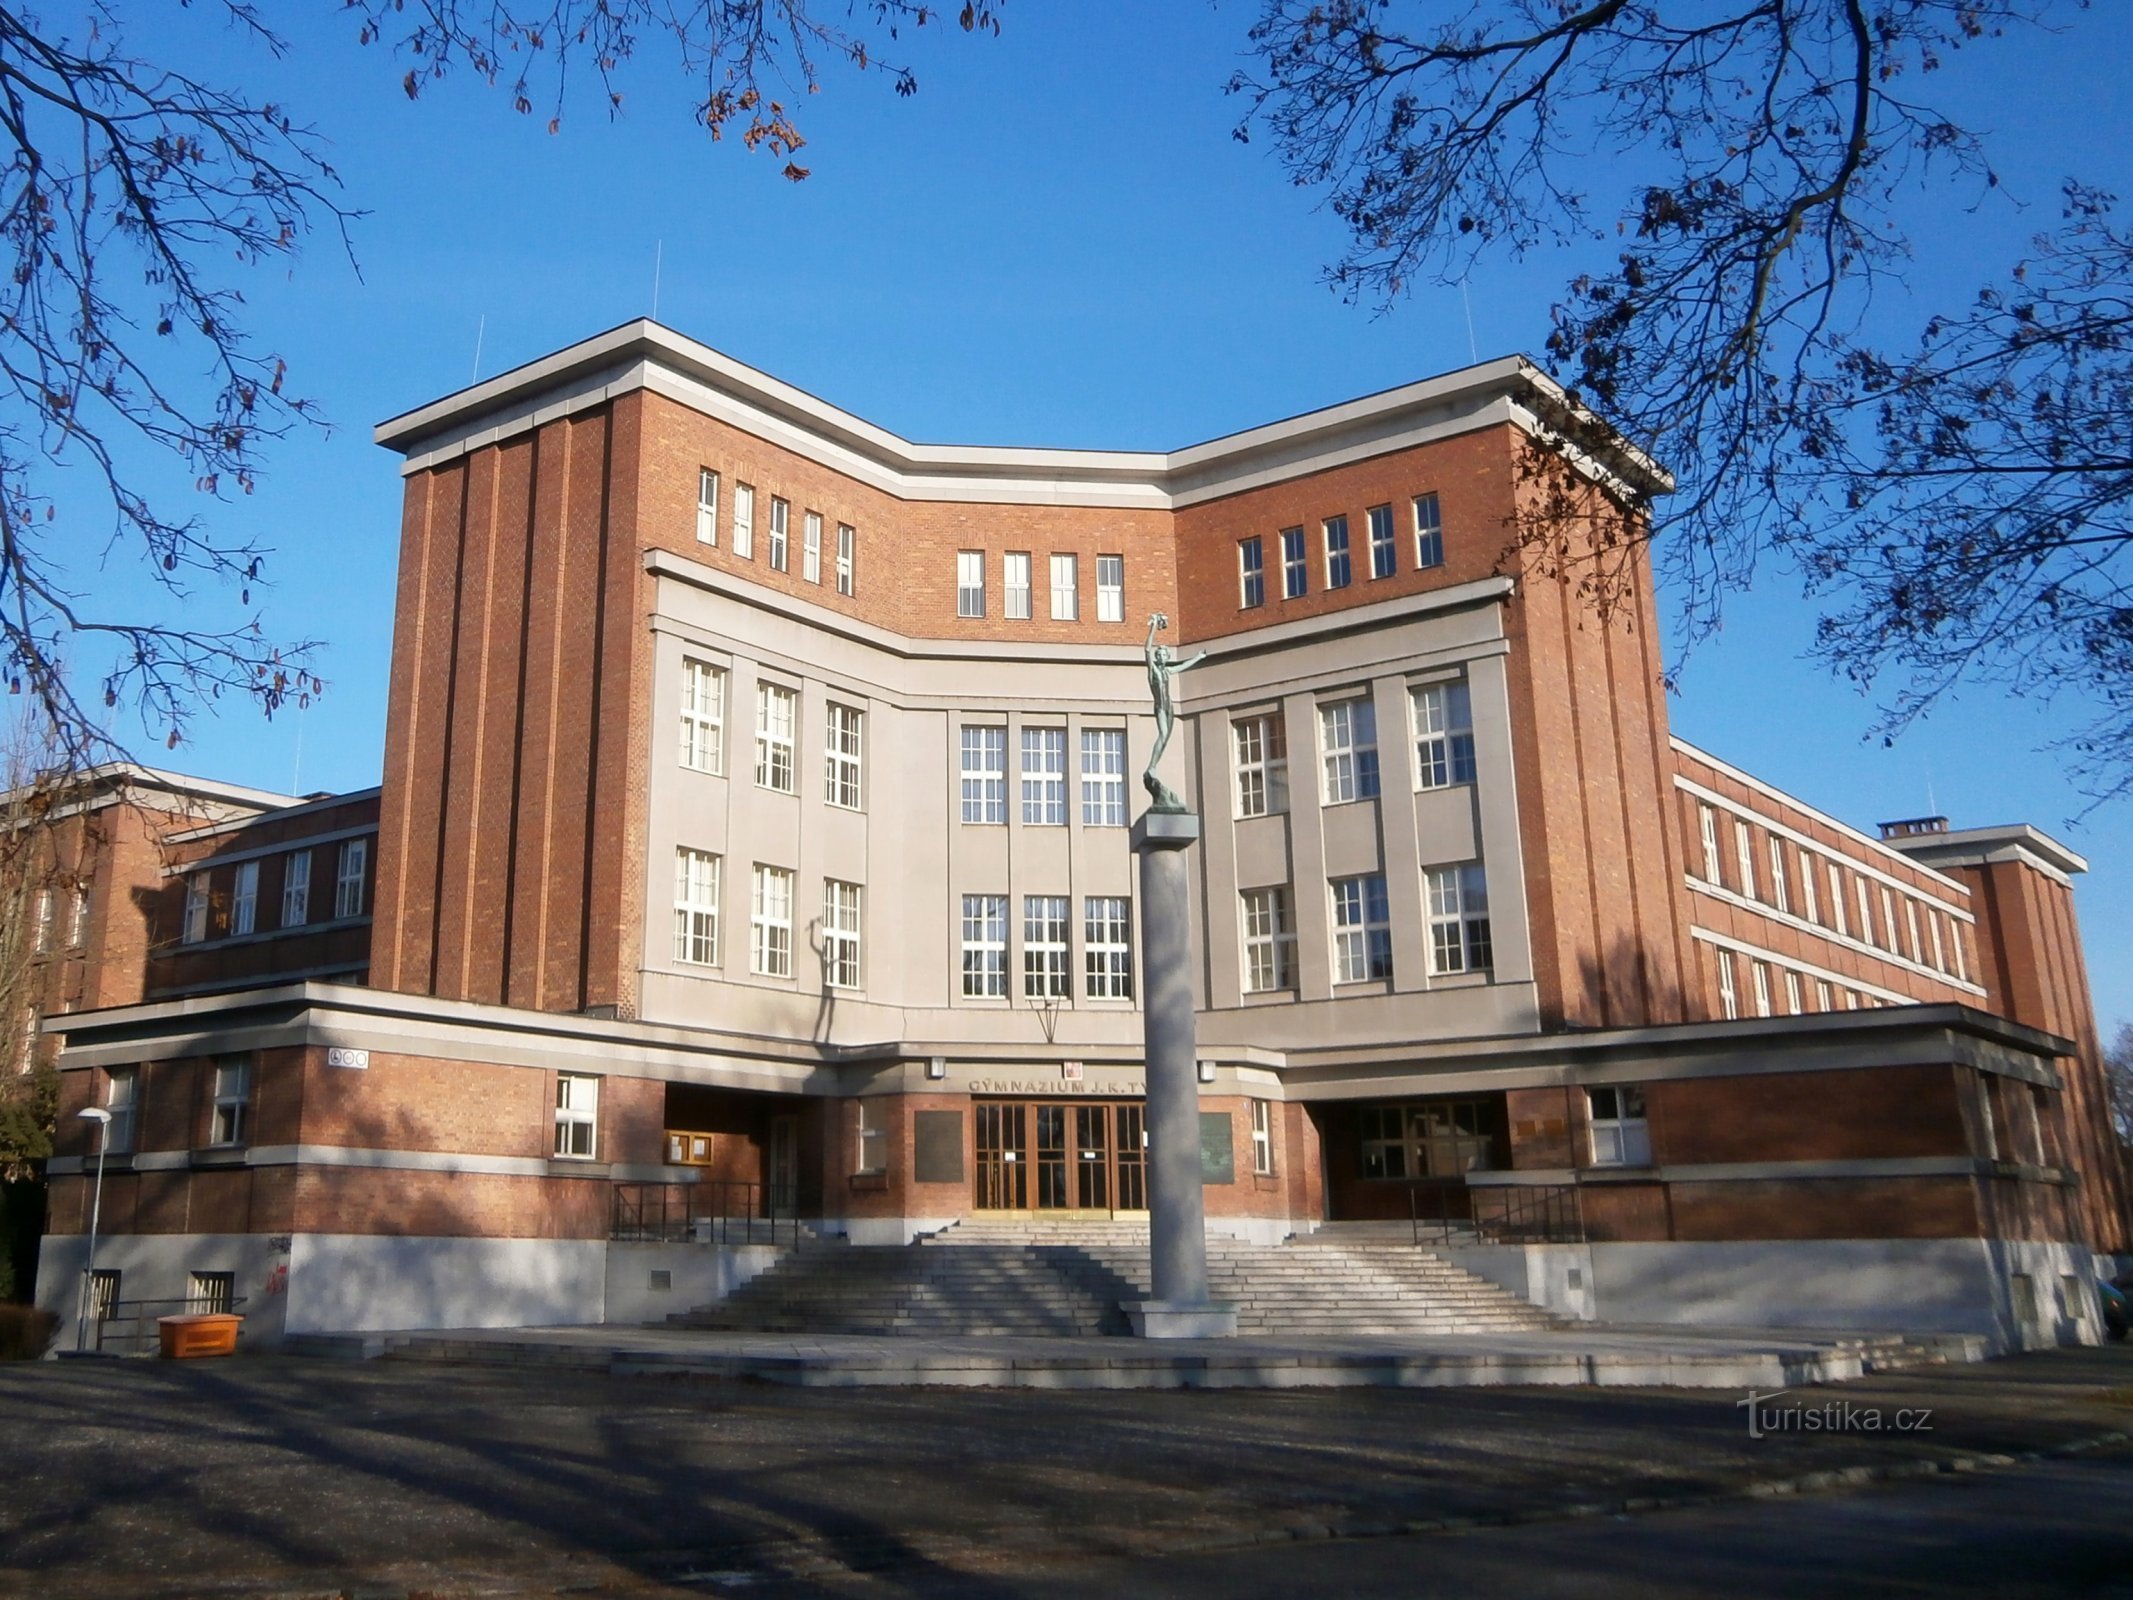 JK Tyla High School (Hradec Králové, 3.12.2016 december XNUMX)